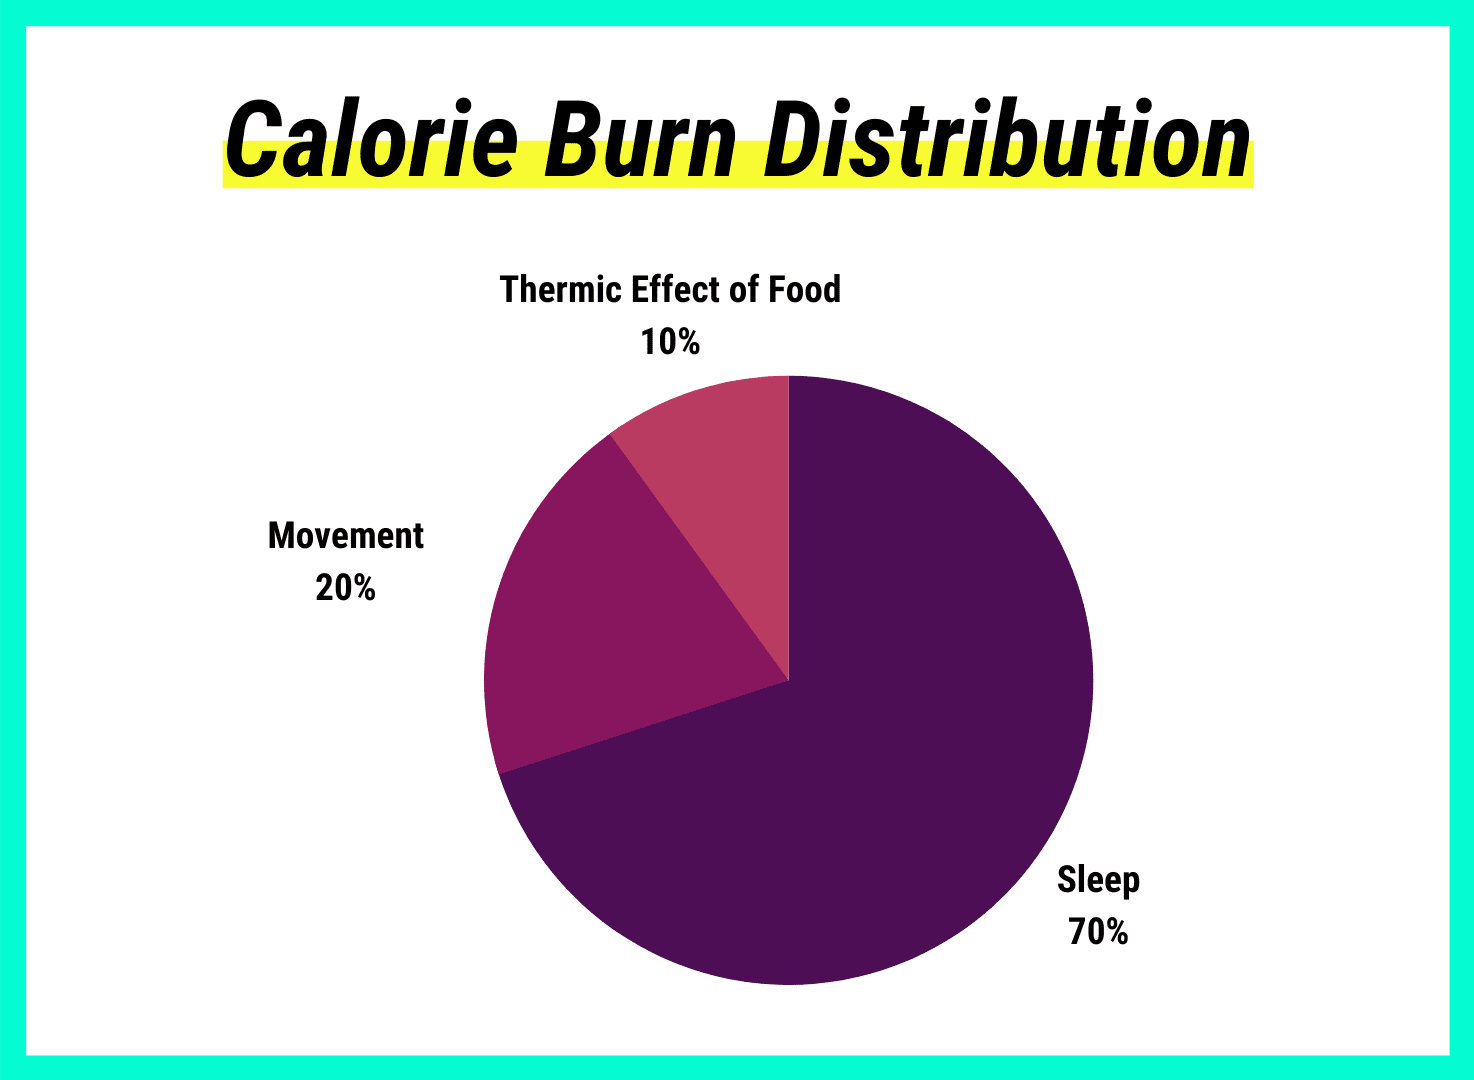 calorie burn distribution pie chart